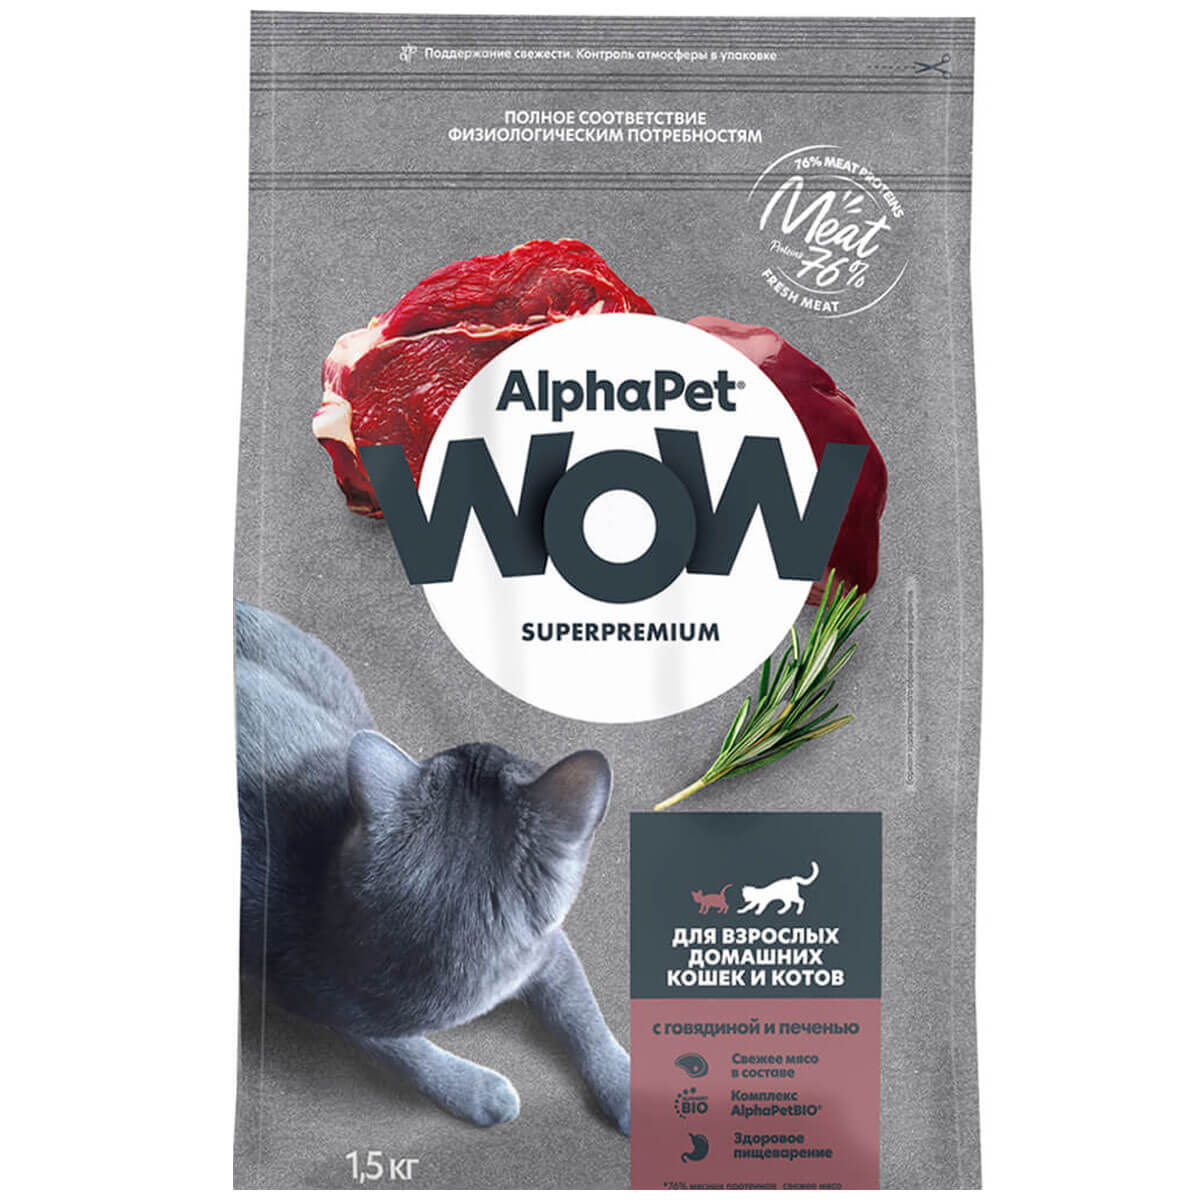 SUPERPREMIUM 1,5 кг сухой корм для взрослых домашних кошек и котов c говядиной и печенью, ALPHAPET WOW - фото 1